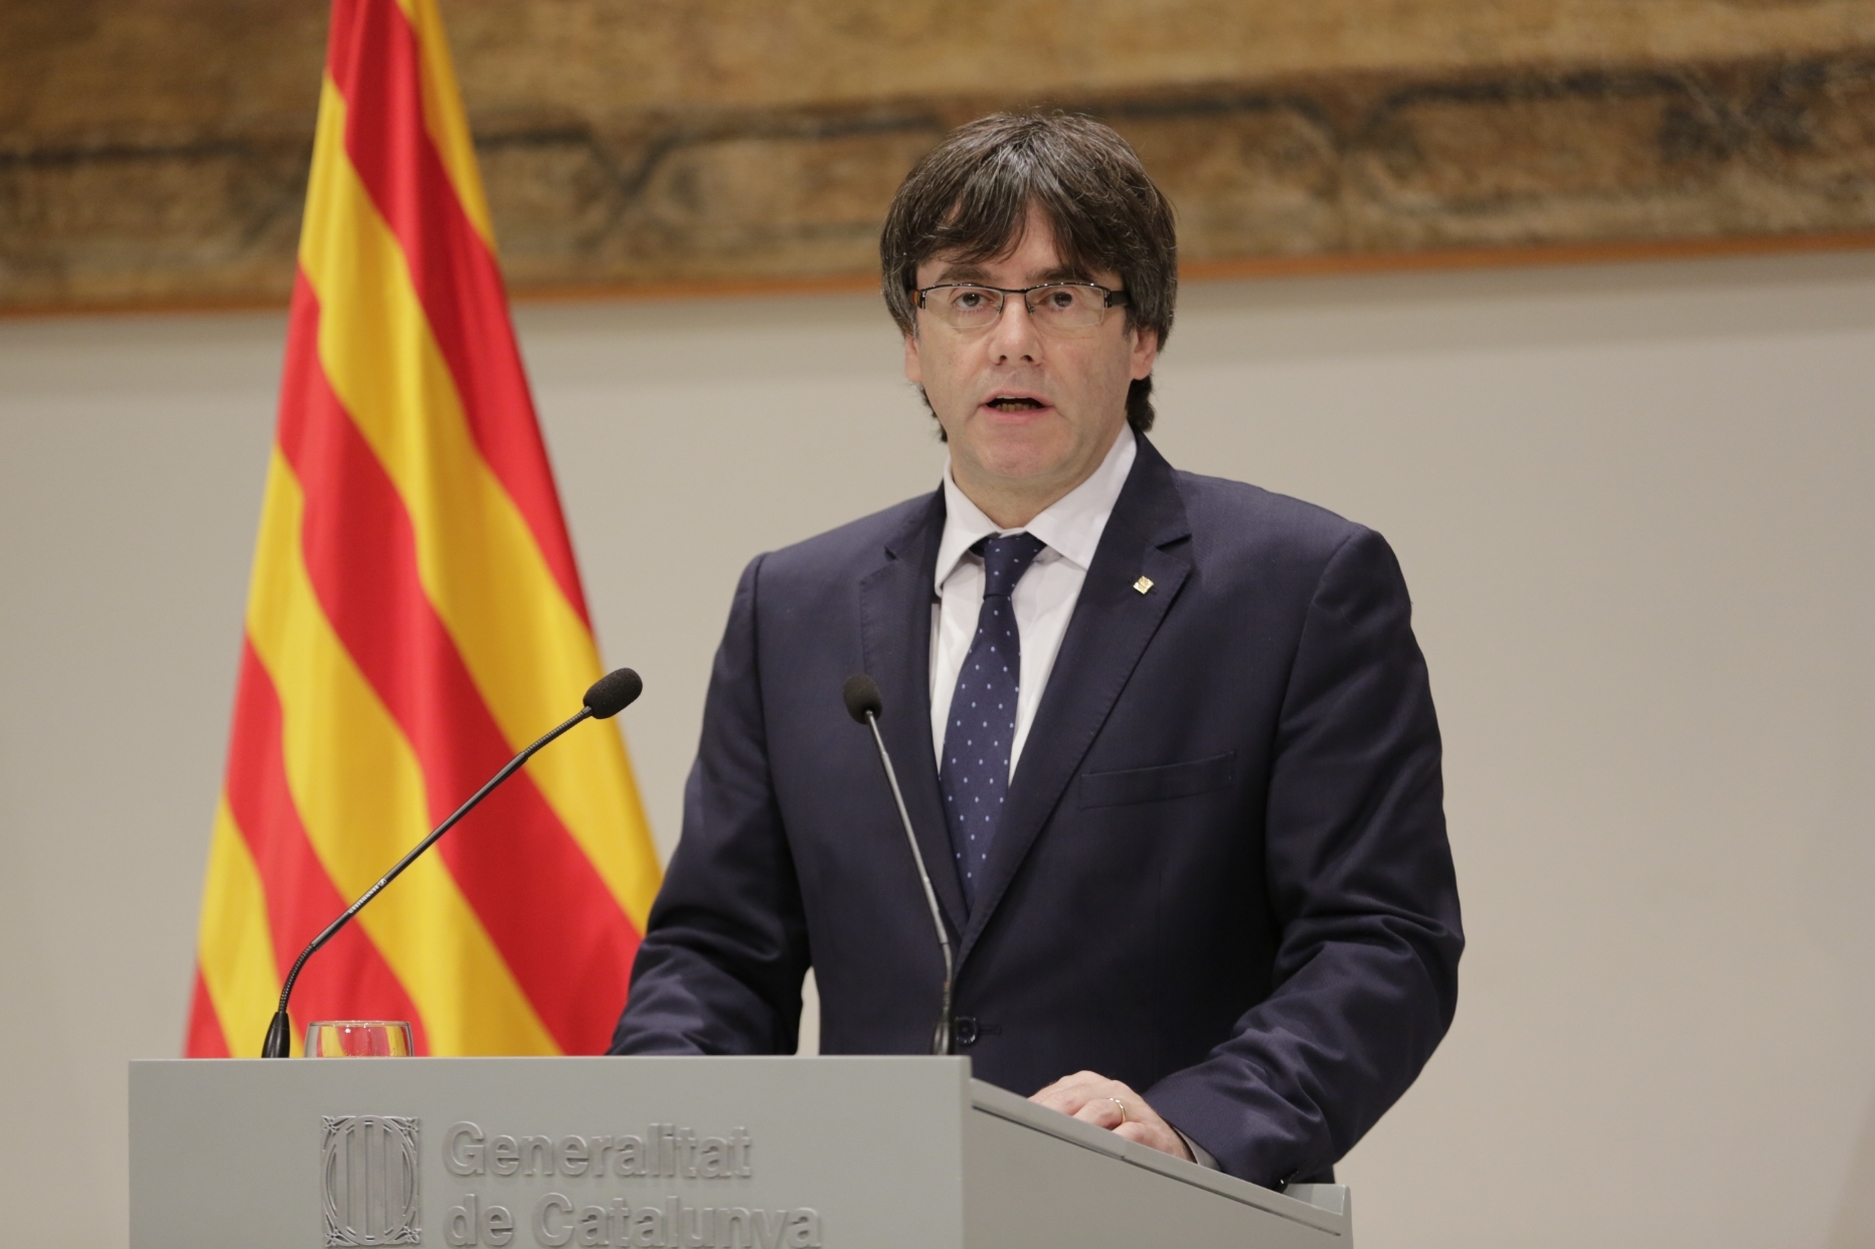 Ποιος είναι ο ηγέτης για την ανεξαρτησία της Καταλονίας που προκαλεί «πονοκέφαλο» σε Μαδρίτη και ΕΕ; (φωτό, βίντεο)